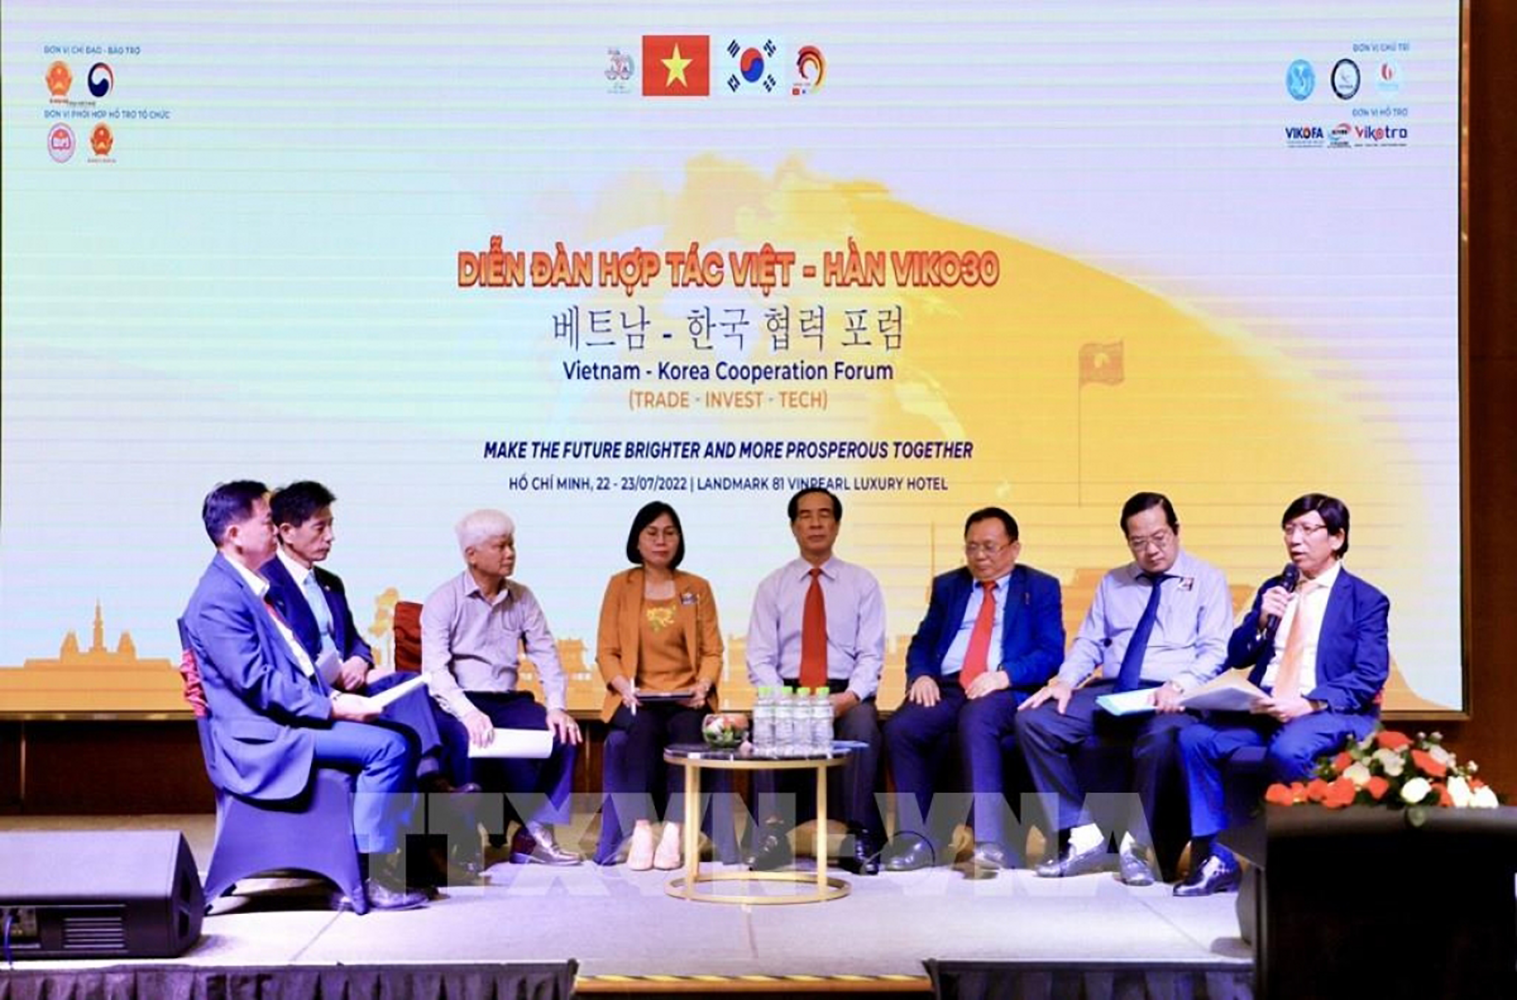 Vietnam Korea Cooperation Forum